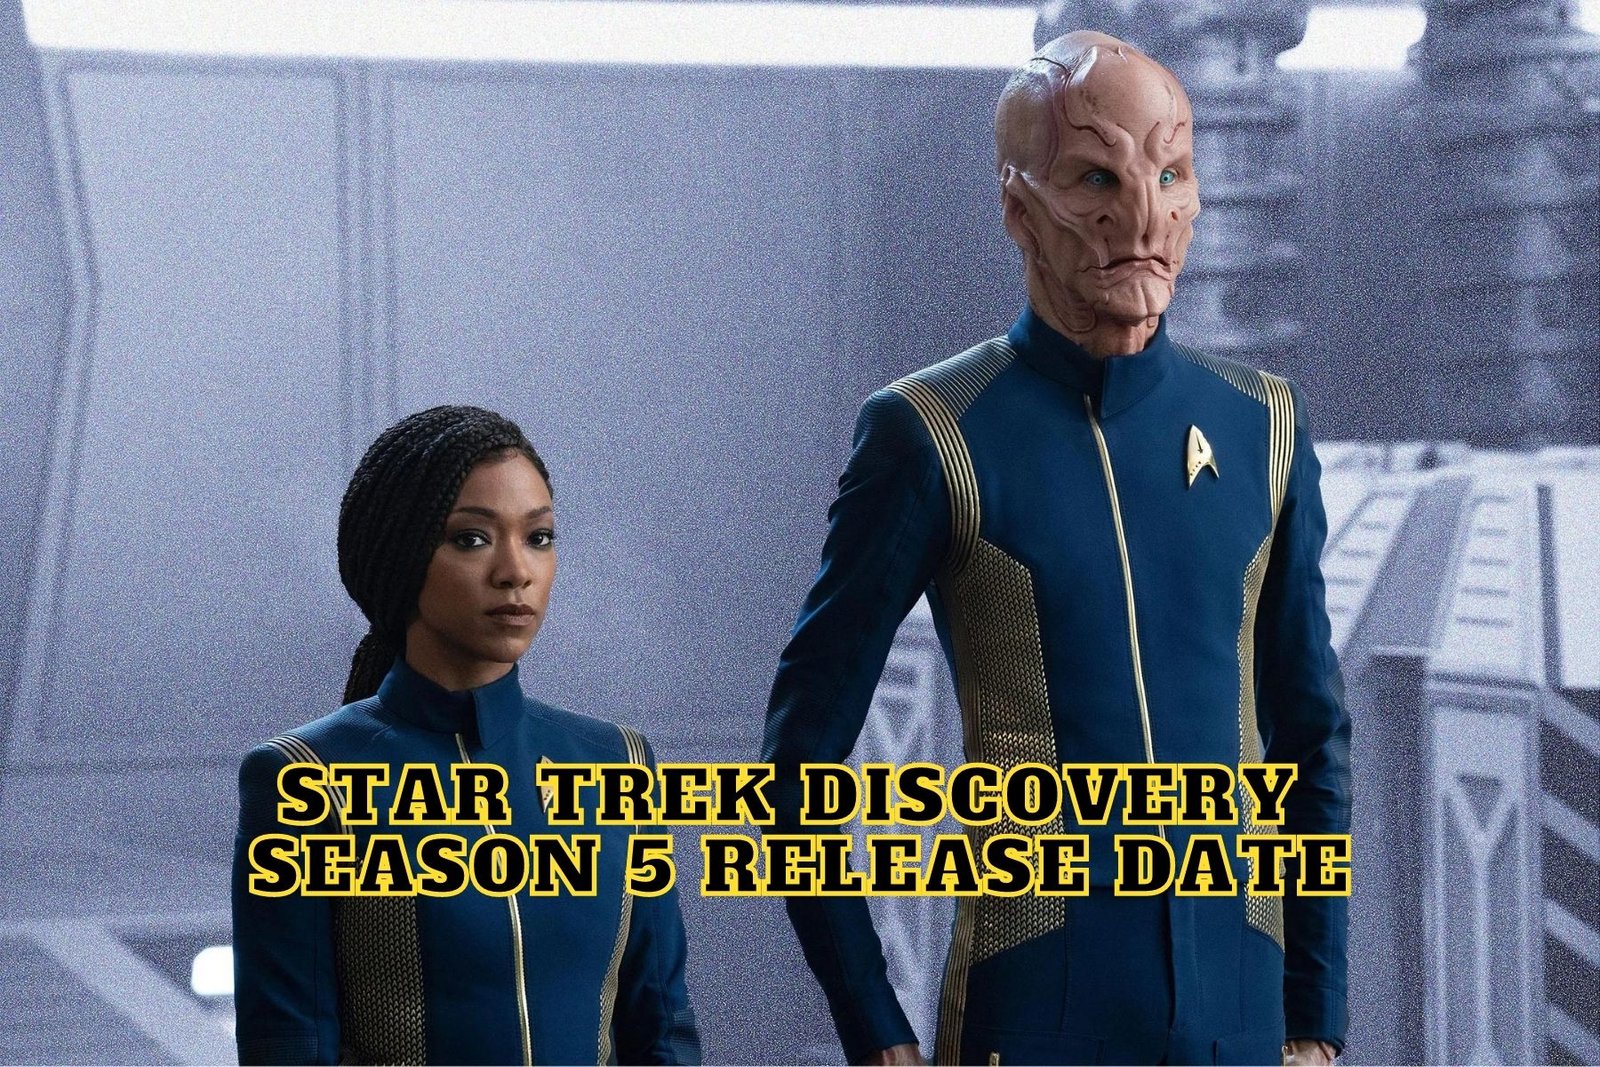 Star Trek Discovery Season 5 Release Date, Trailer